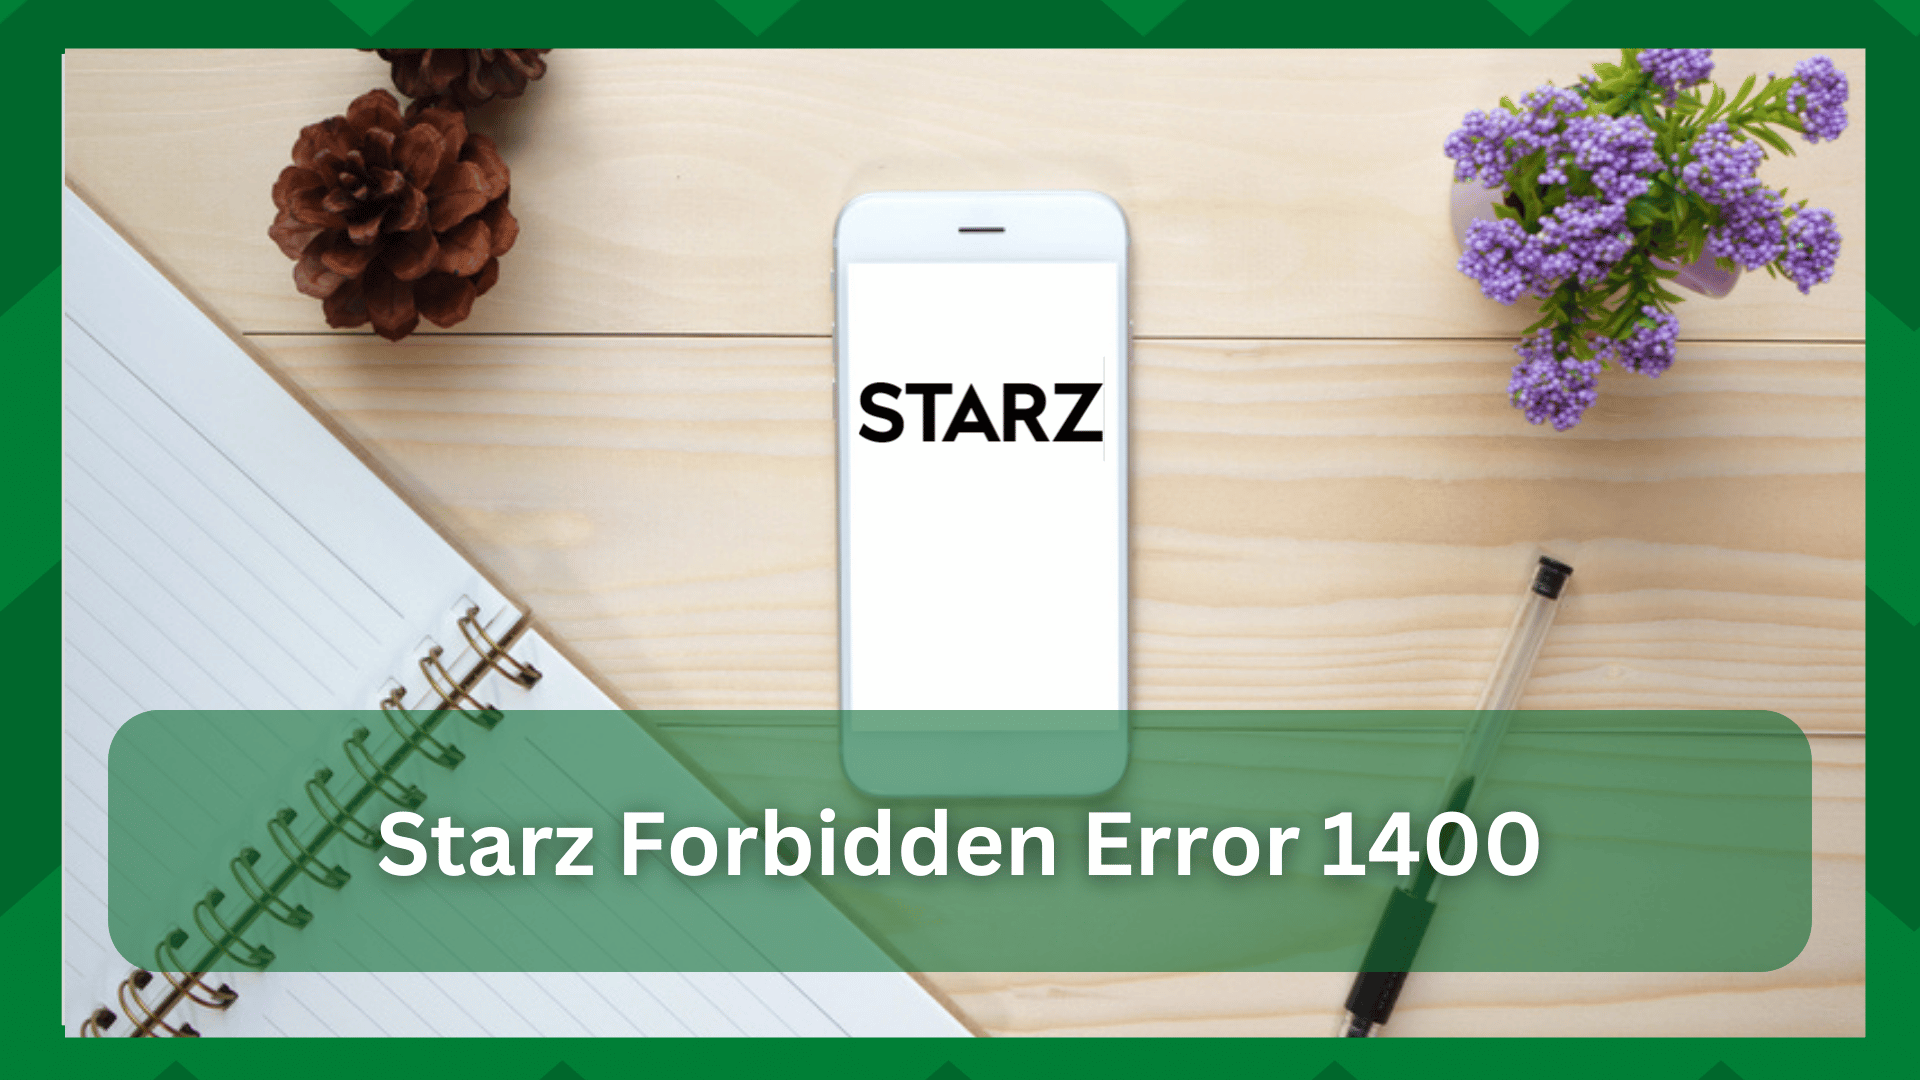 3 solucións sinxelas para o erro STARZ prohibido 1400